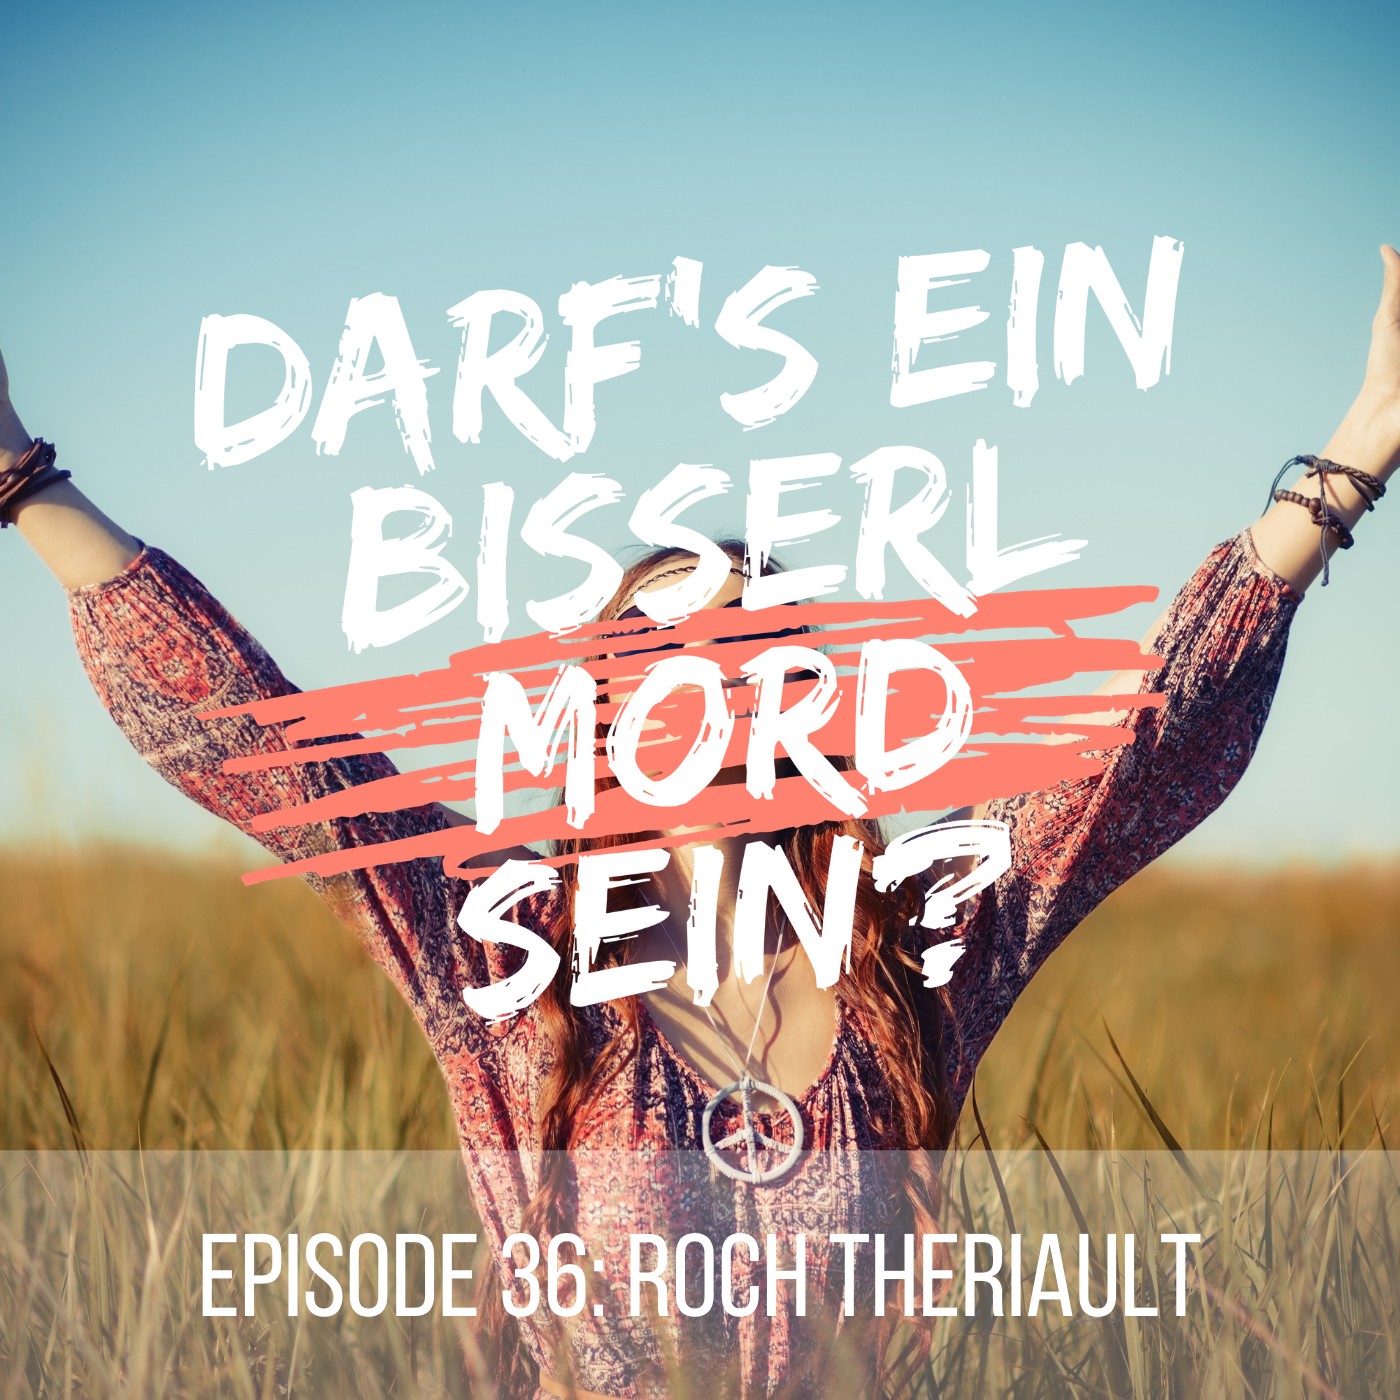 Episode 36: Roch Thériault (Teil 1 von 2)